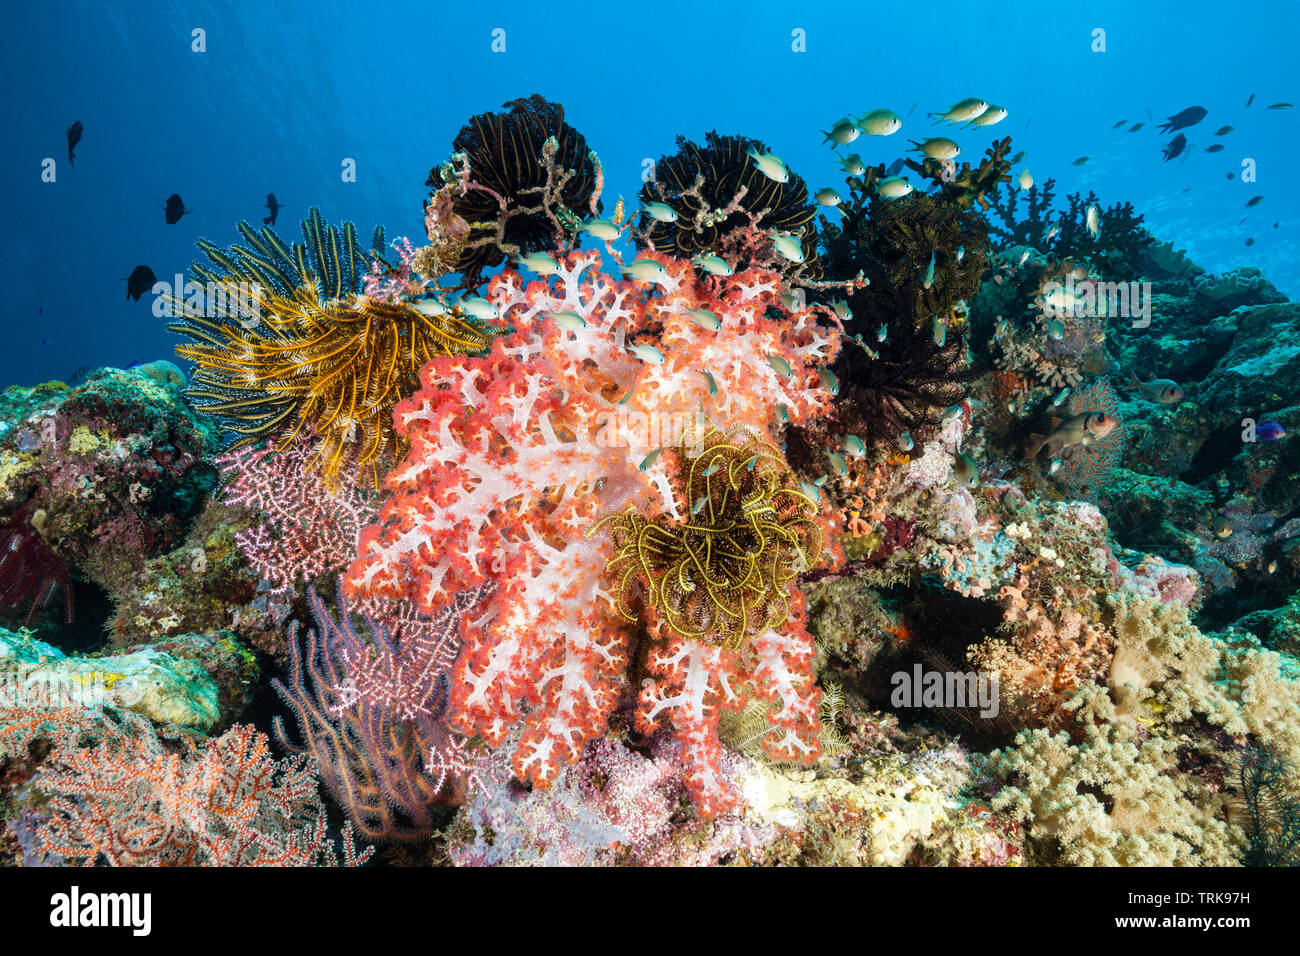 Riche en espèces de coraux, Lissenung, New Ireland, Papouasie Nouvelle Guinée Banque D'Images